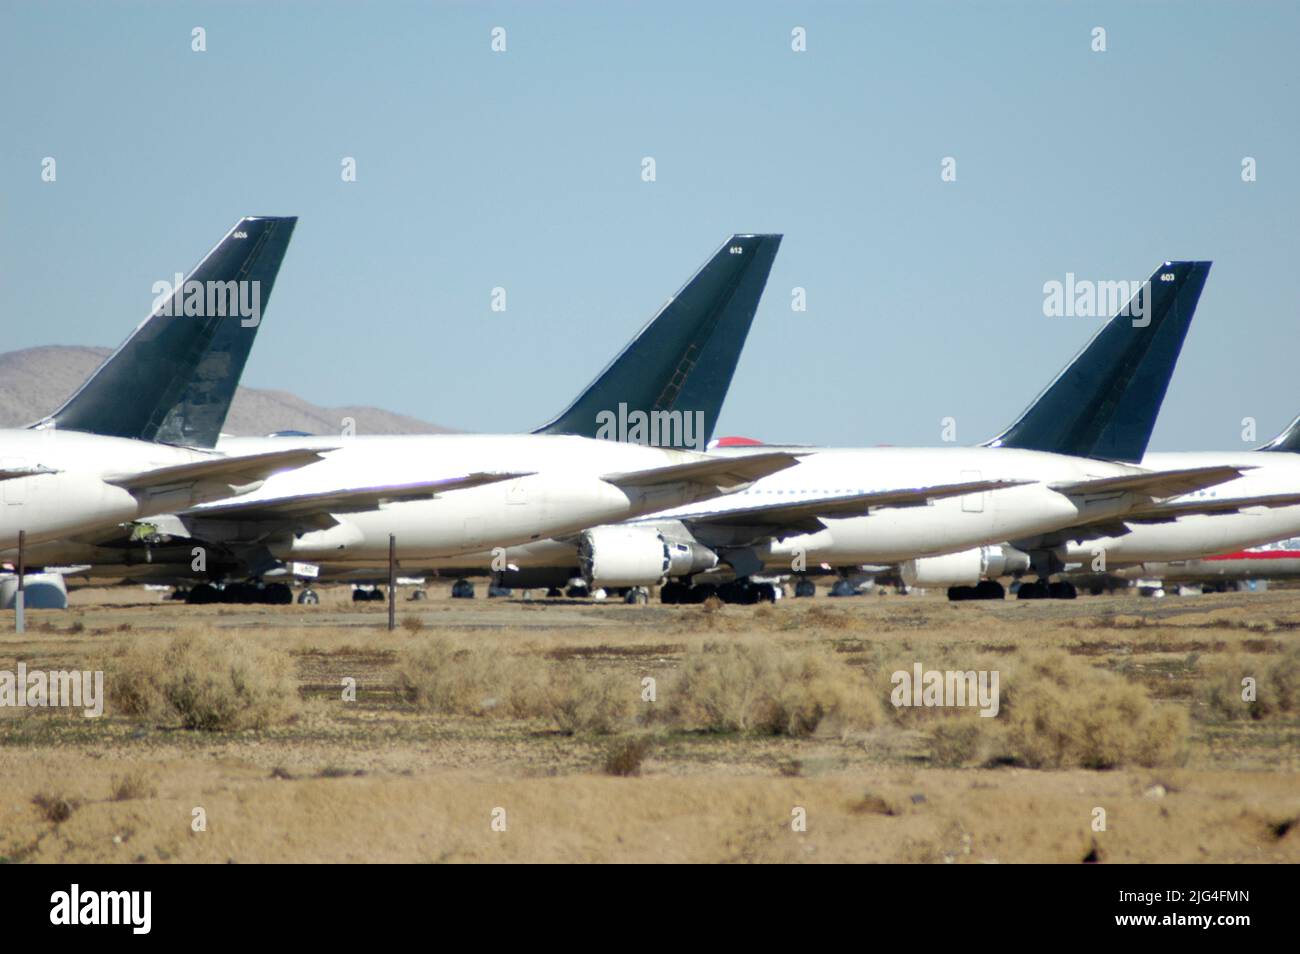 Les avions de ligne de haute époque garés à l'aéroport de Mojave en Californie en attente d'être réparés et remis à neuf pour être réutilisés comme fret et autres Banque D'Images